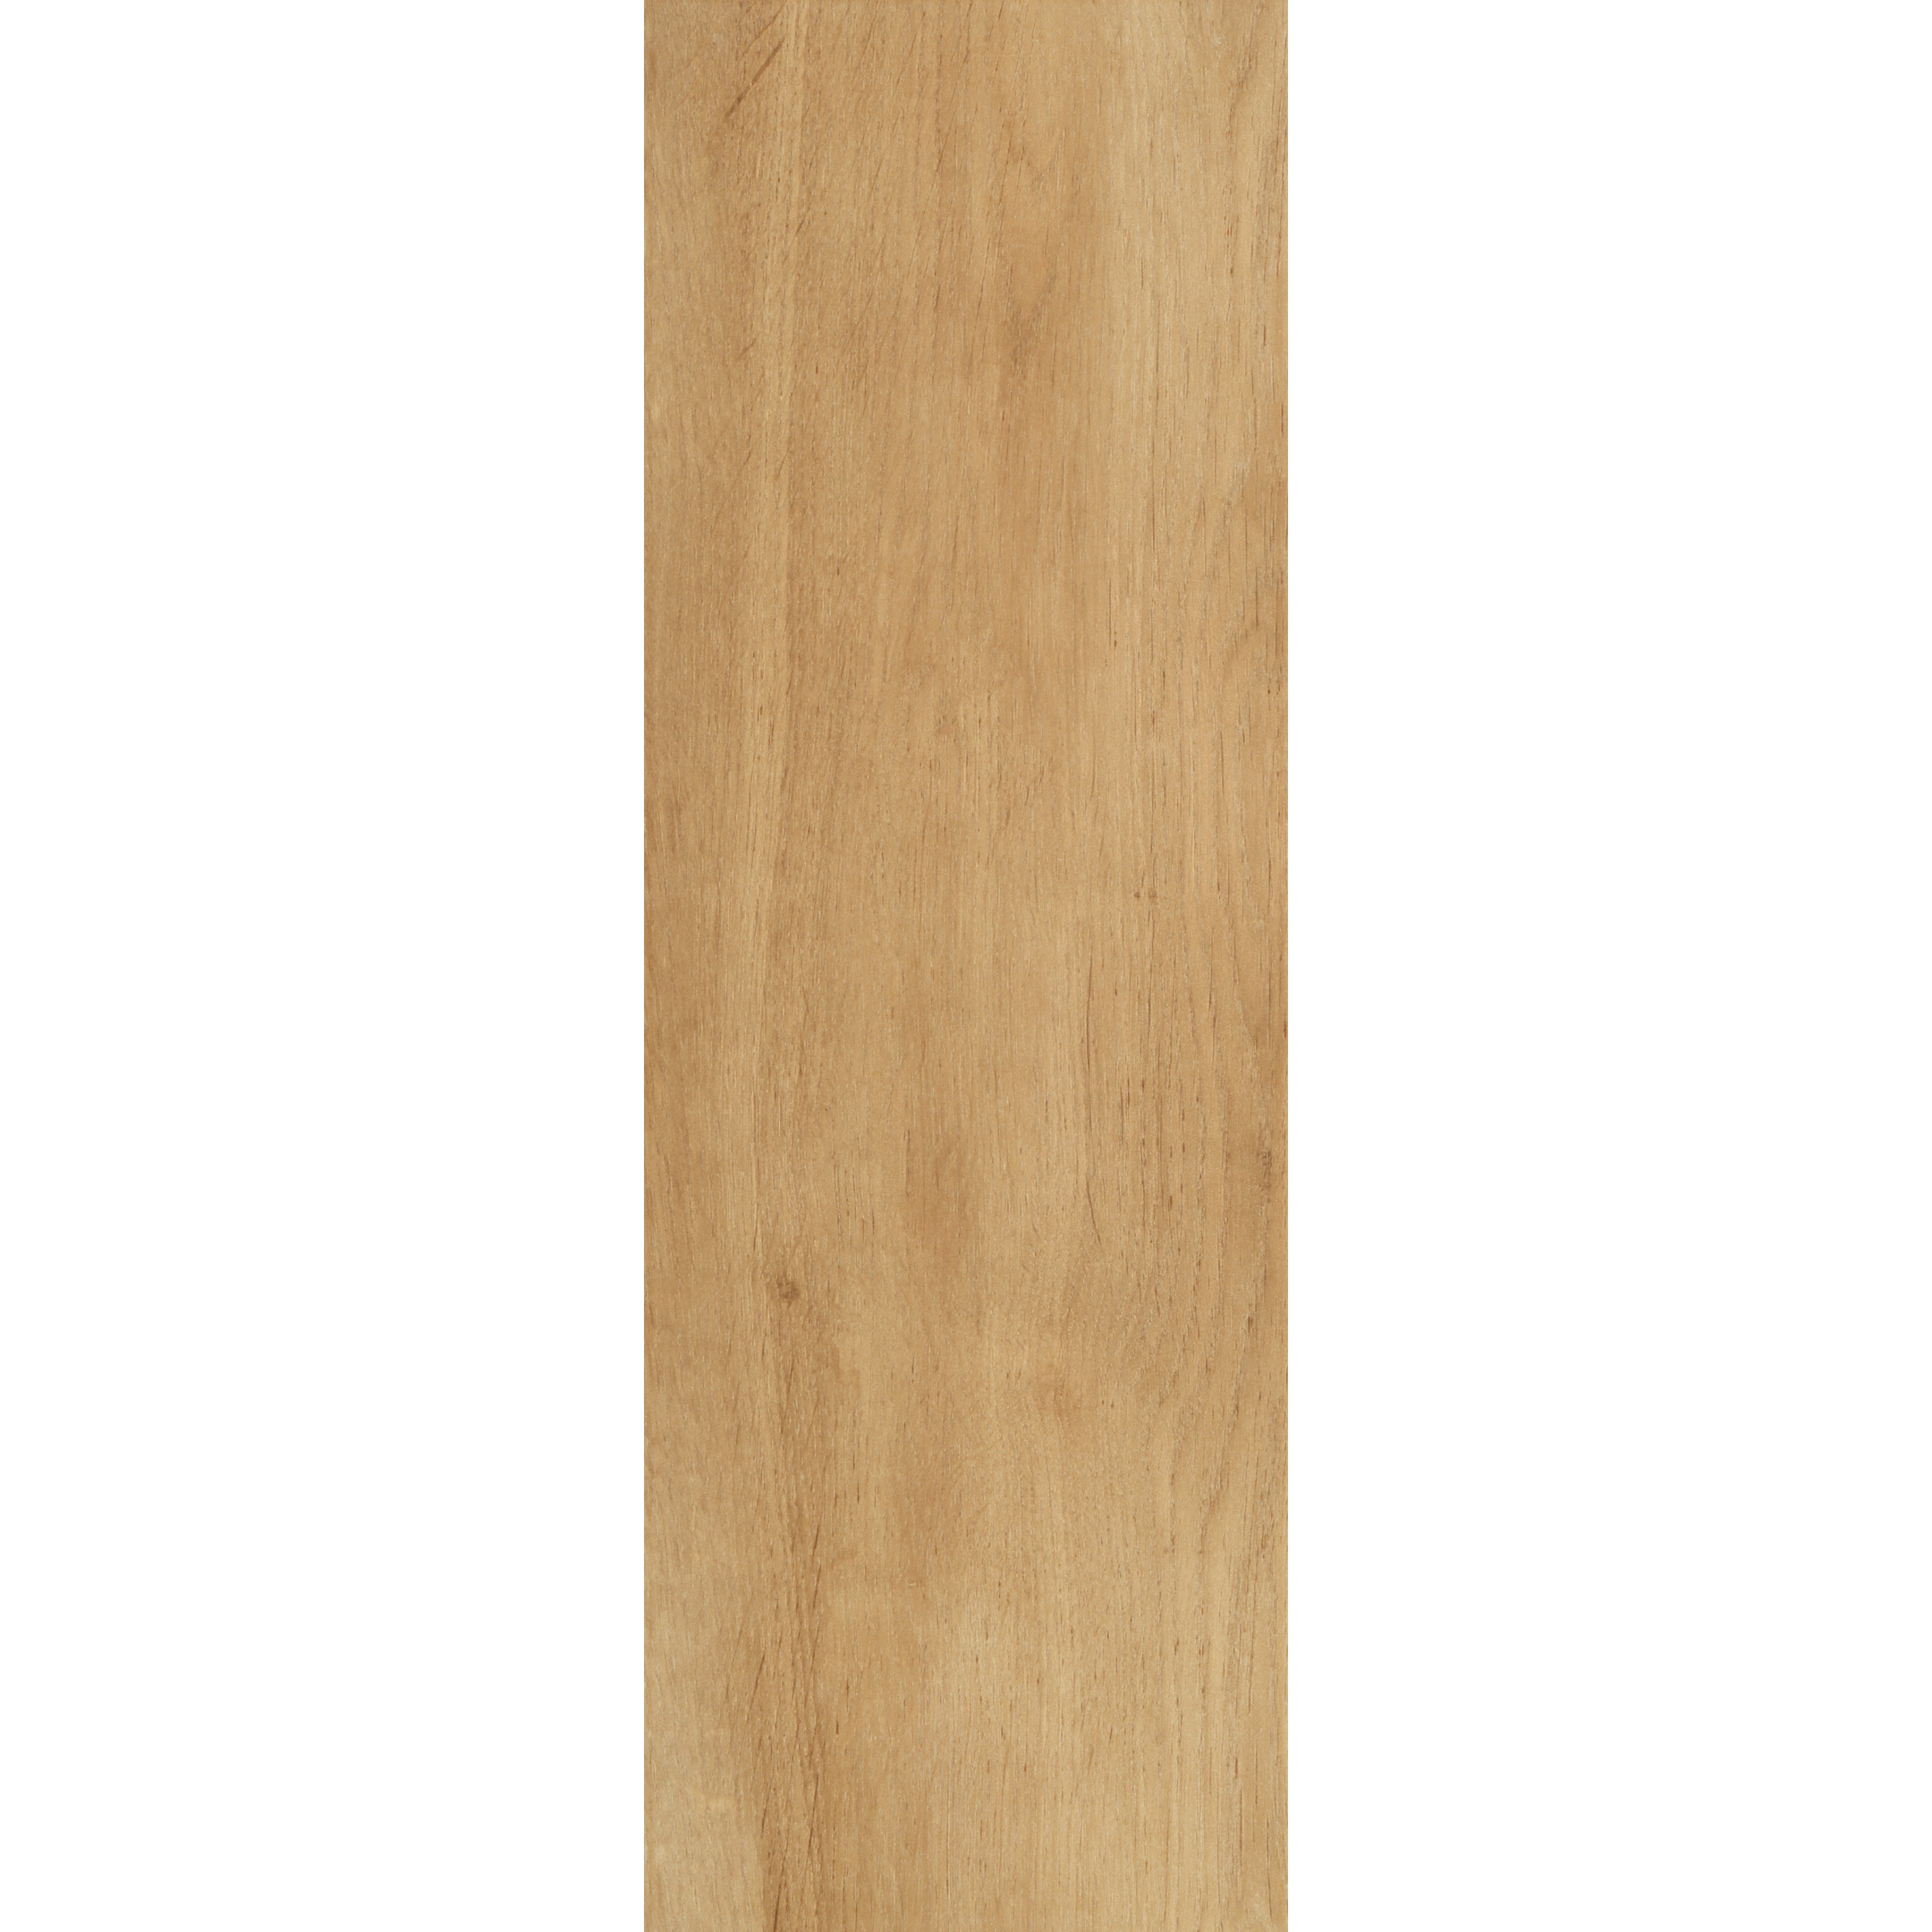 

Плитка облицовочная Нефрит Теснина под дерево песочная 600x200x9 мм (10 шт.=1,2 кв.м), Песочный